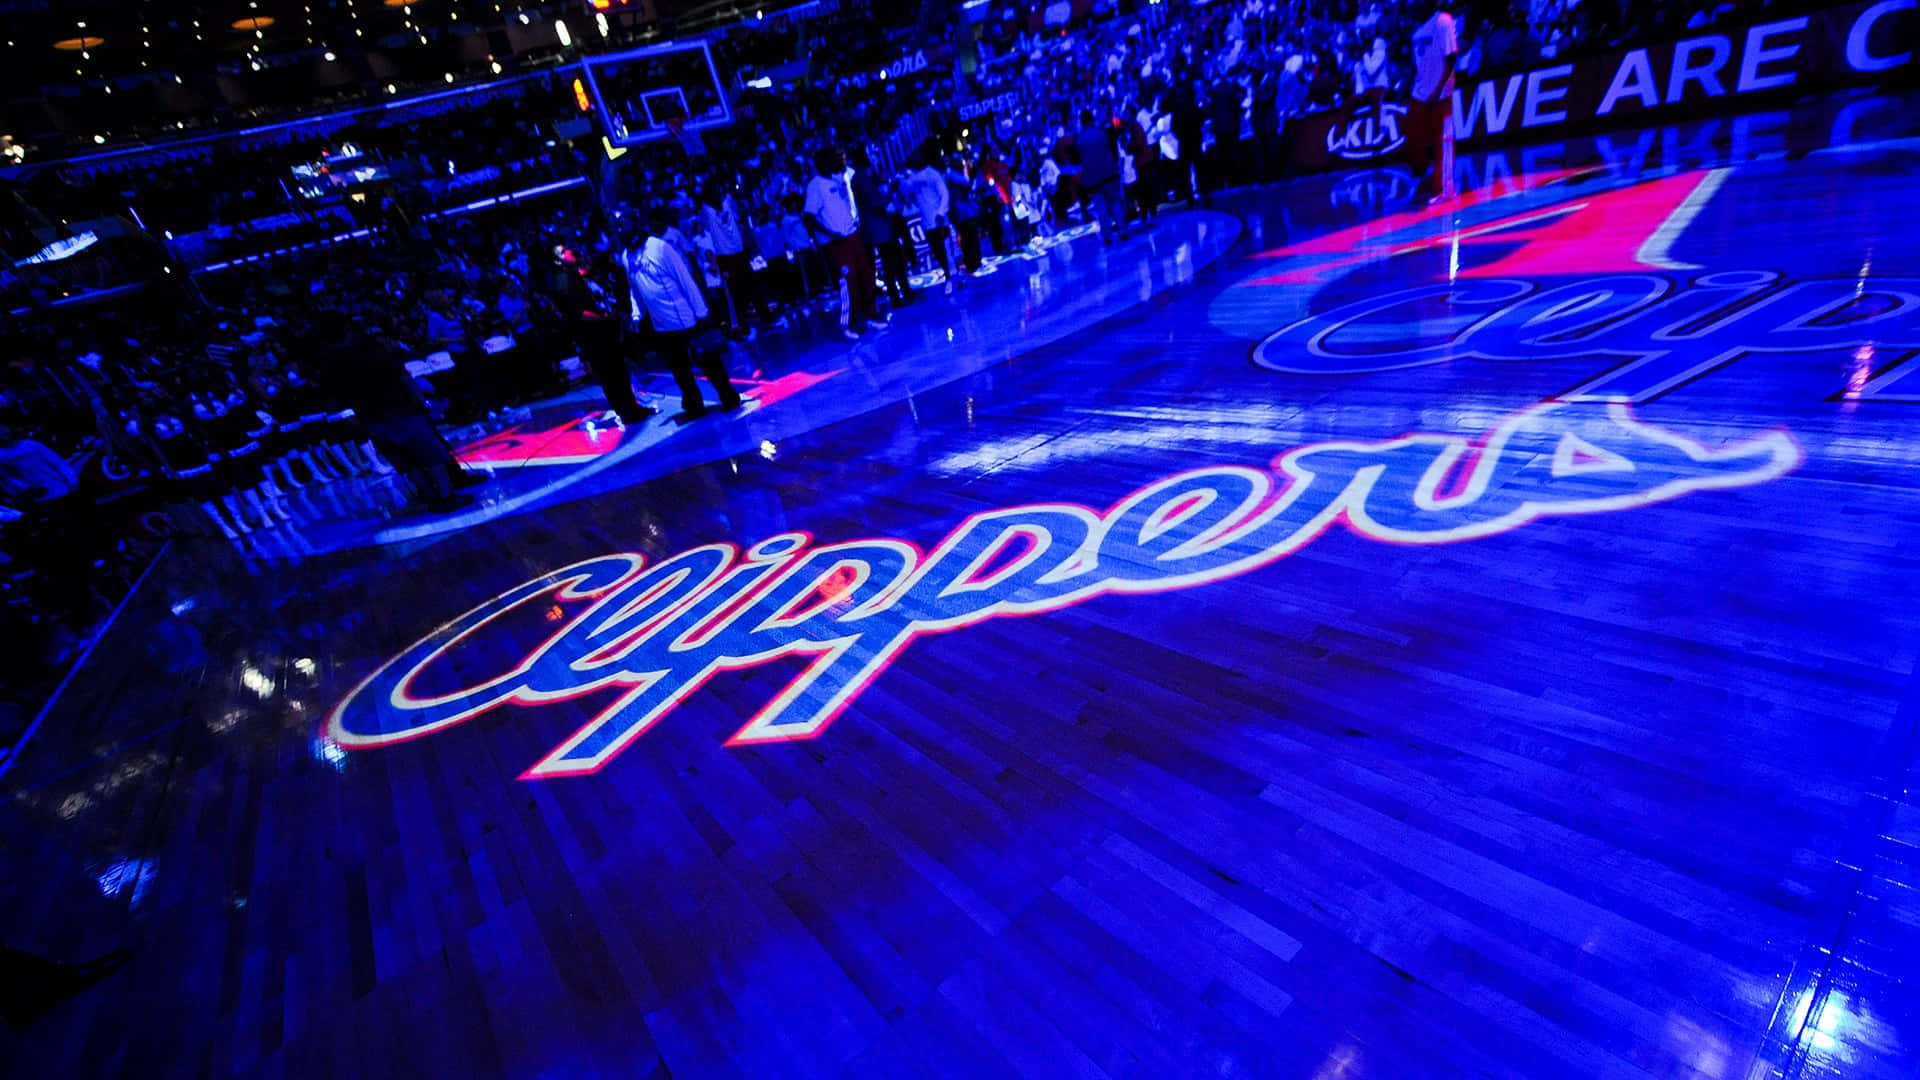 Fotografiadel Campo Dei La Clippers Presso Lo Staples Center Sfondo